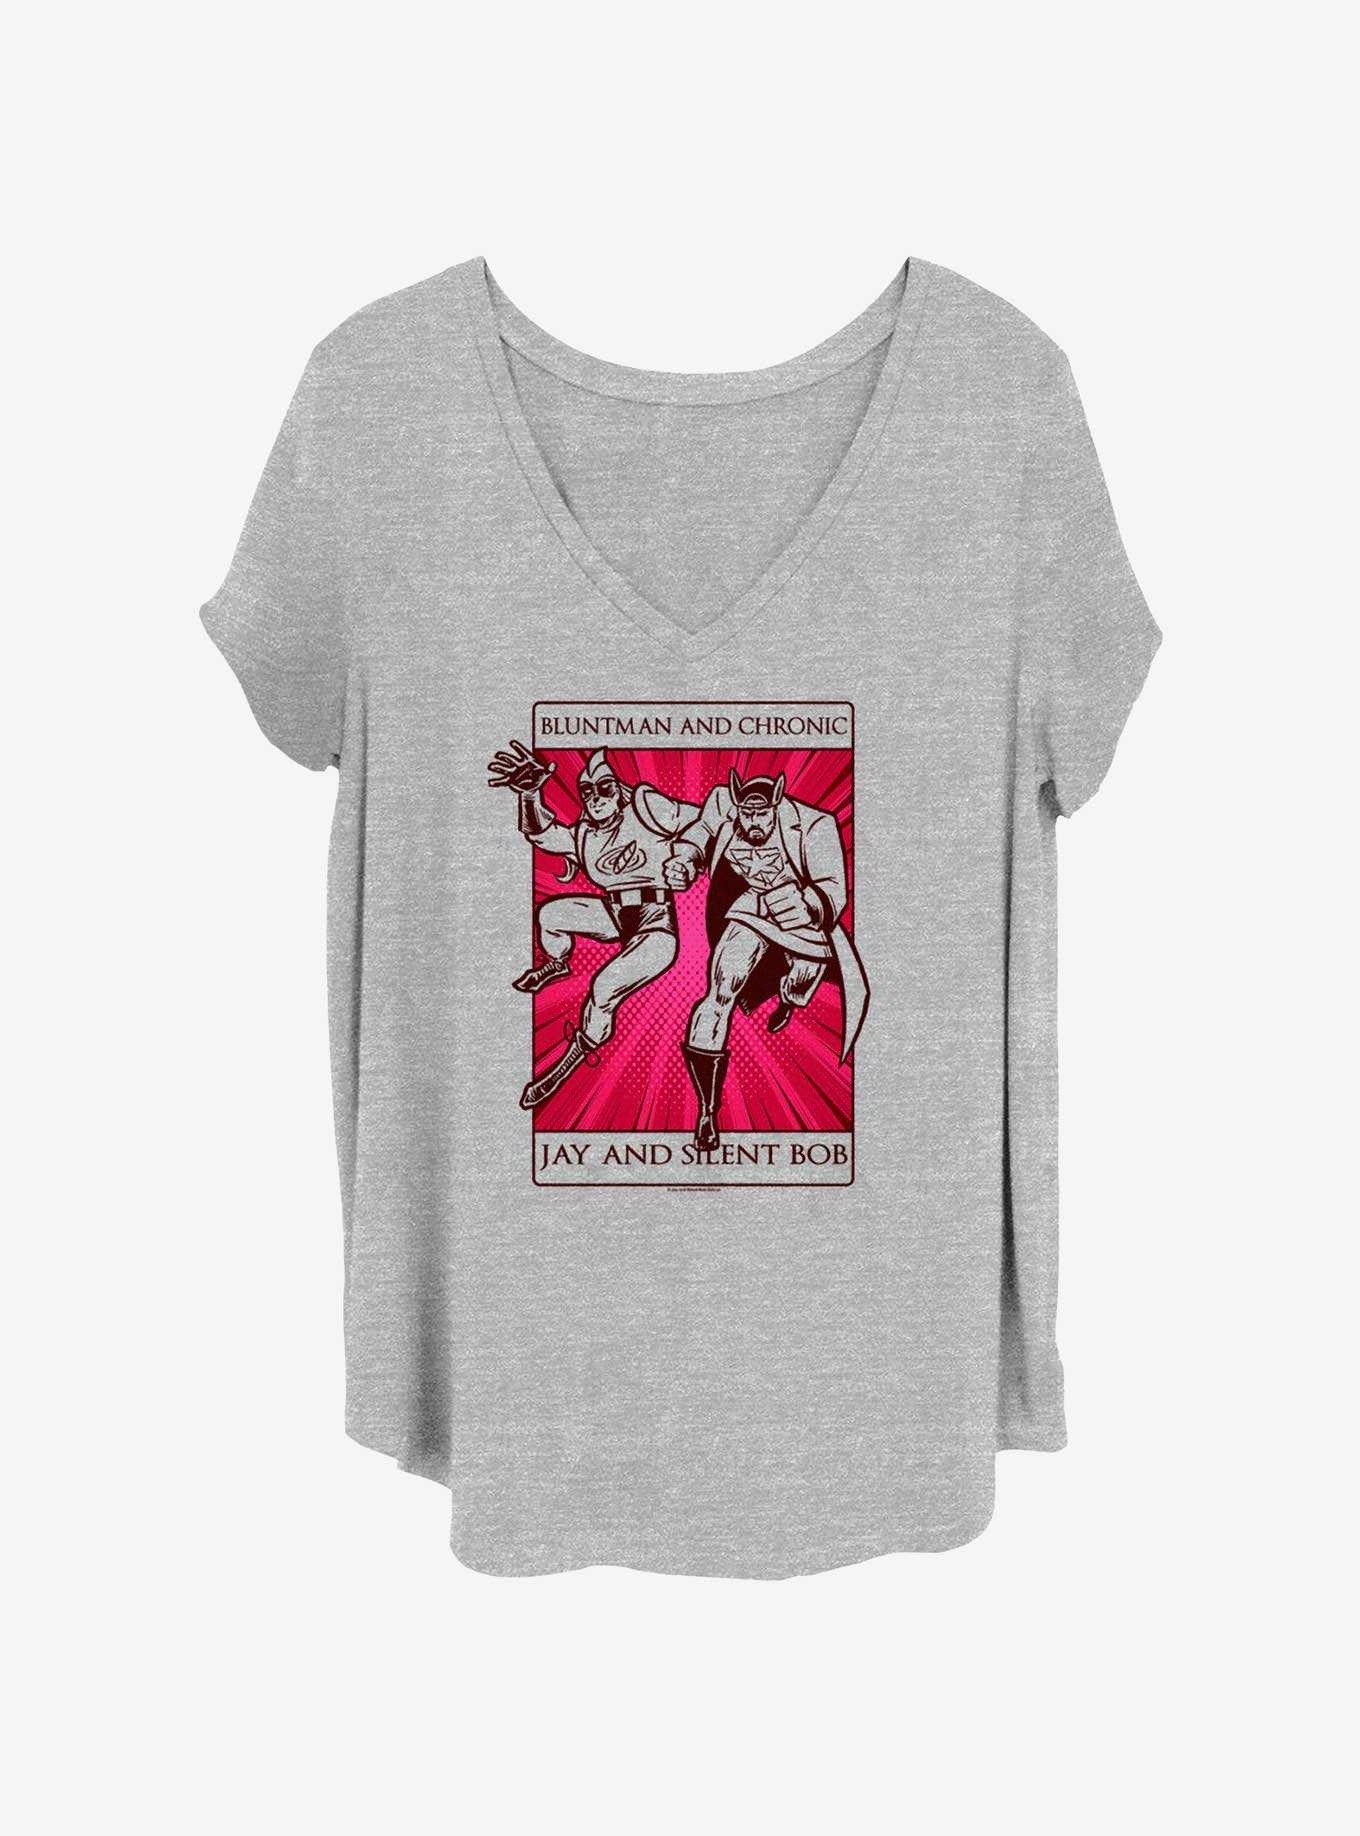 Jay and Silent Bob Tarot Card Girls T-Shirt Plus Size, , hi-res